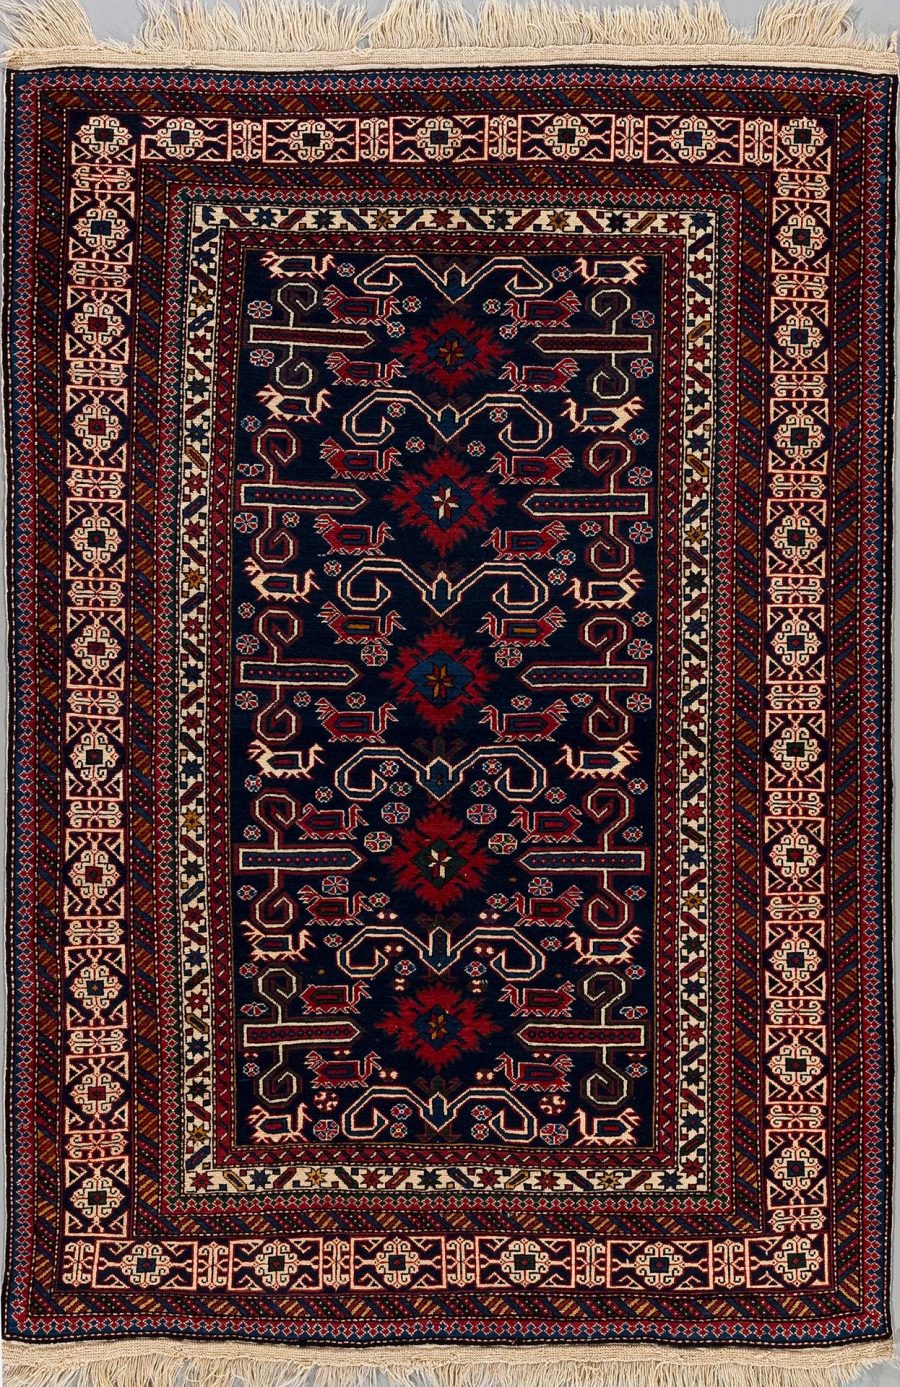 Handgeknüpfter orientalischer Teppich mit detailliertem Muster in dunkelblau, rot und beige auf einem schwarzem Hintergrund, umgeben von geometrischen Rändern und Fransen an den Enden.